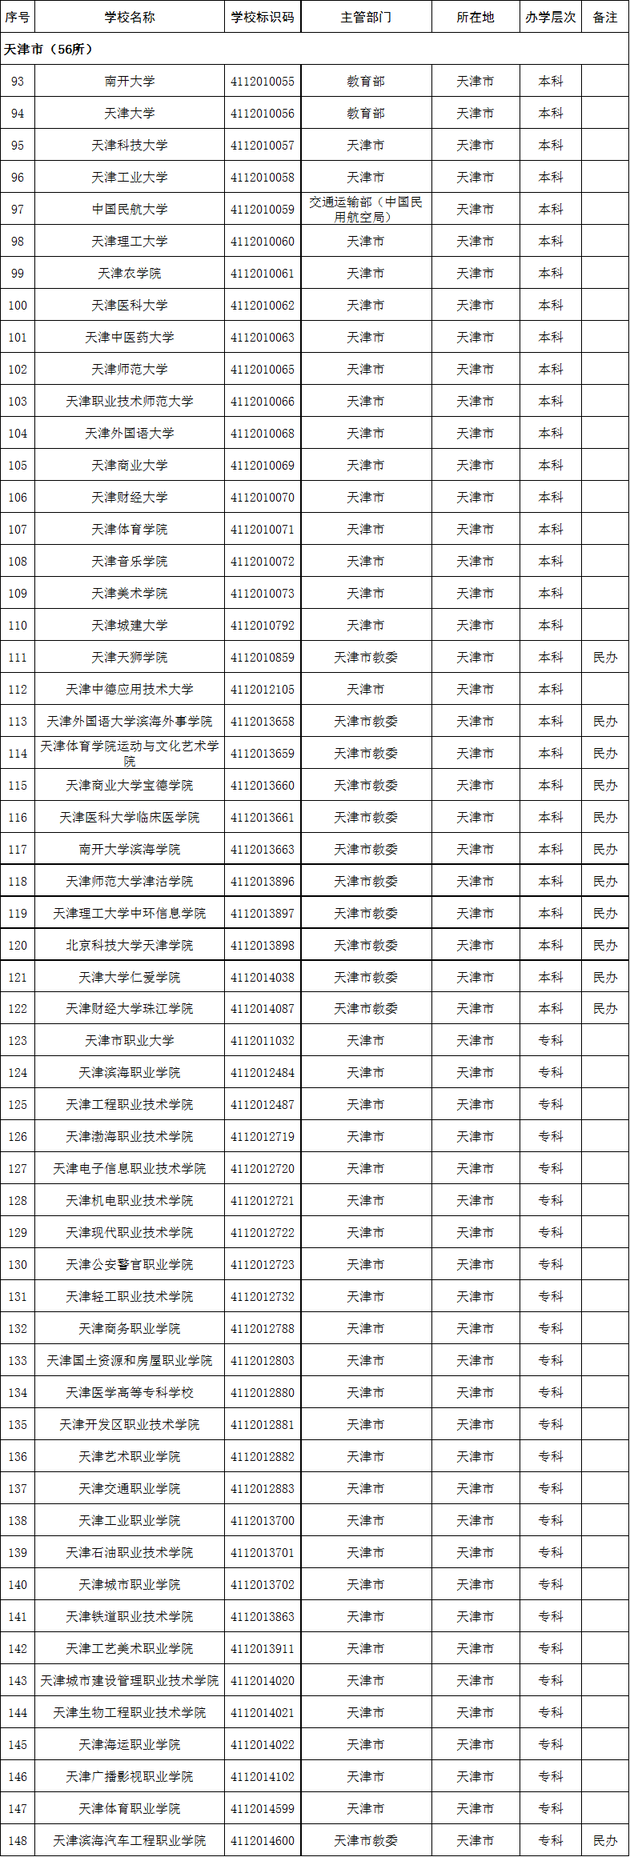 天津市2020年高校名单(56所)